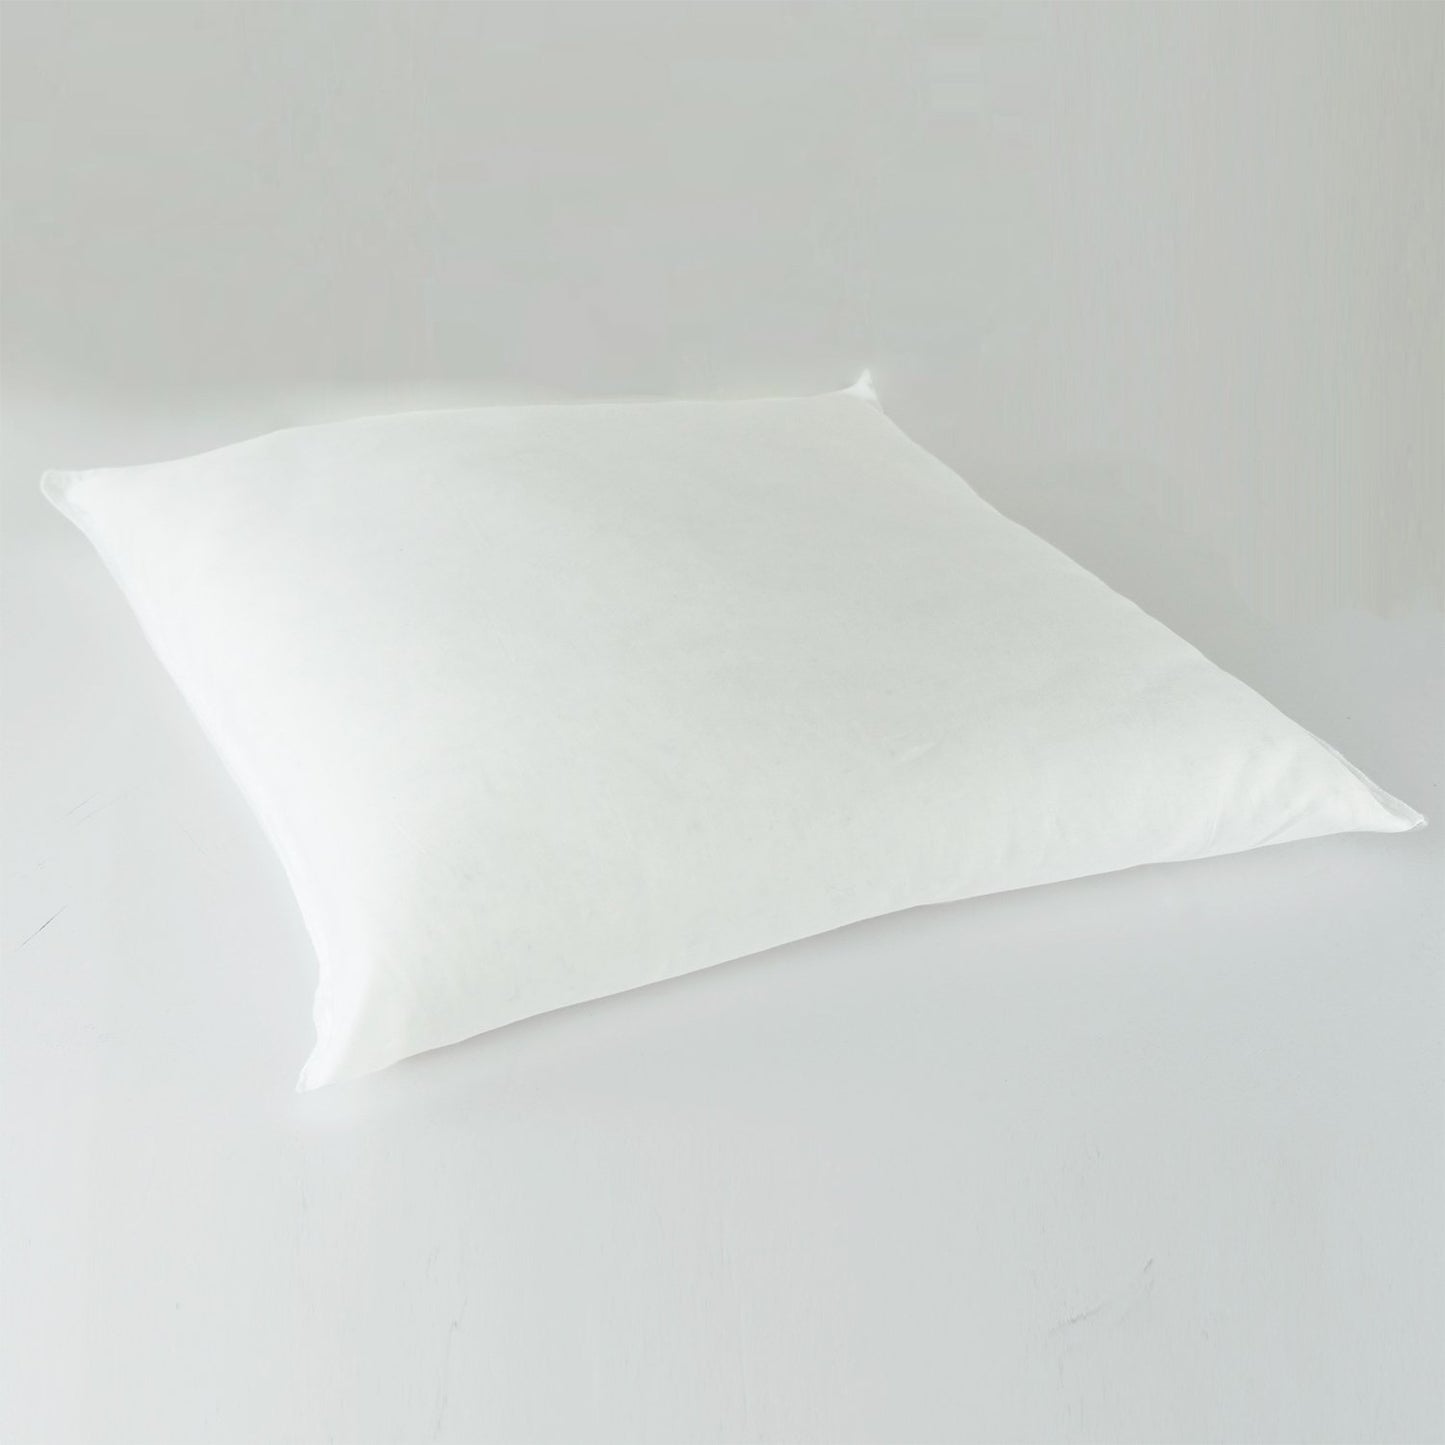 J-Life Hiro Navy Zabuton Floor Pillow_Pillows & Shams_Zabuton Floor Pillows_100% Cotton_Reversible